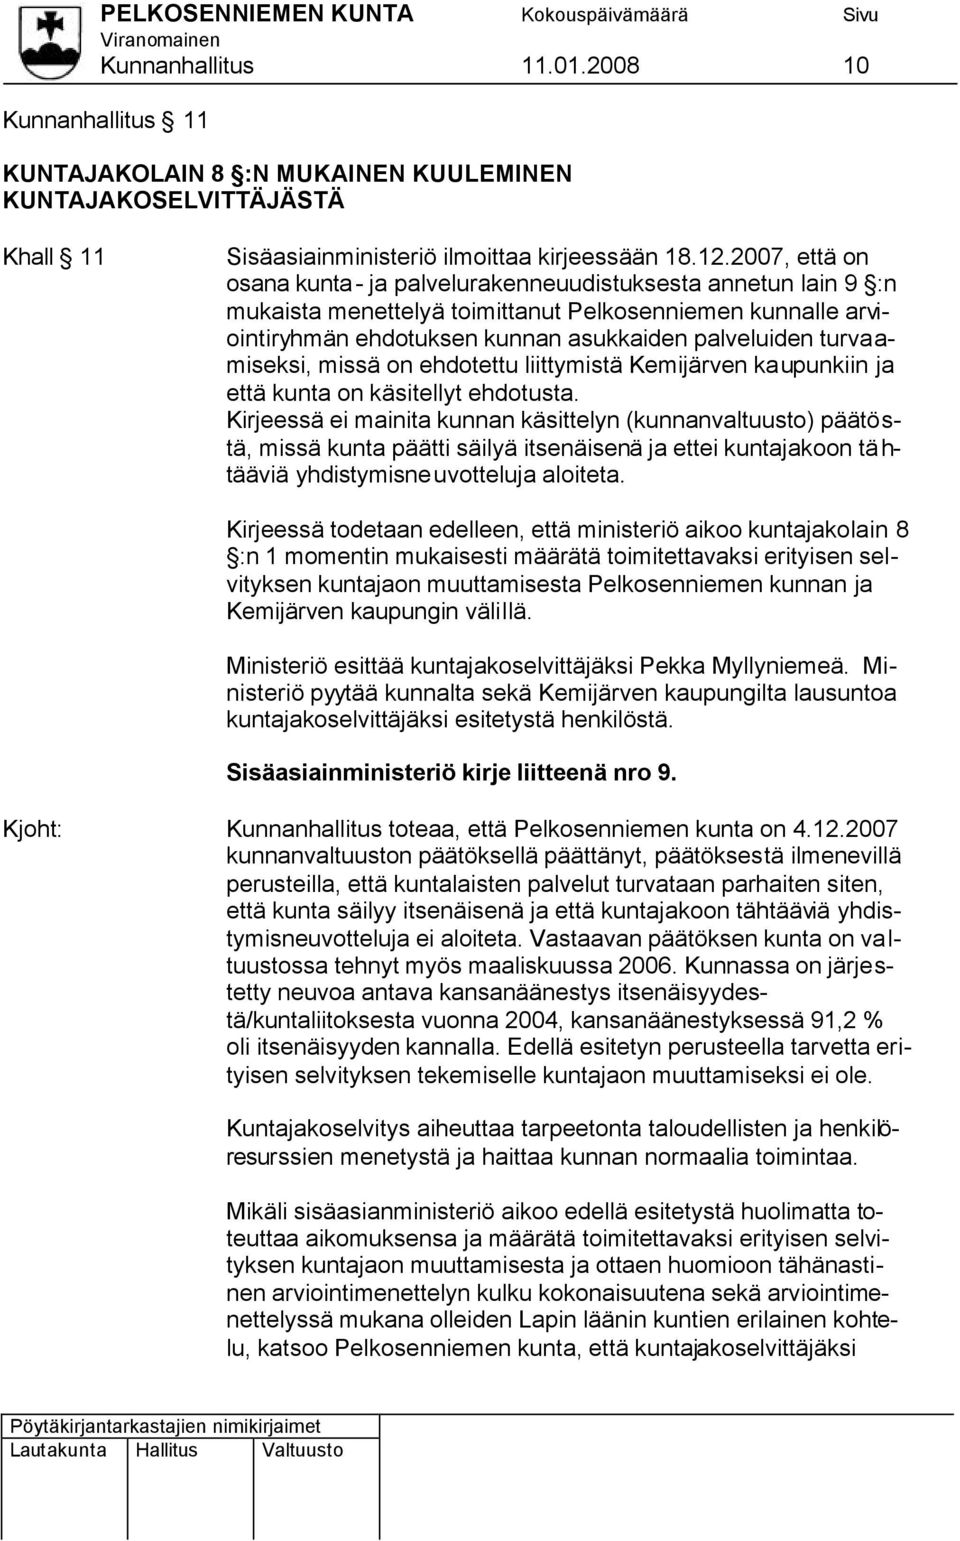 turvaamiseksi, missä on ehdotettu liittymistä Kemijärven kaupunkiin ja että kunta on käsitellyt ehdotusta.